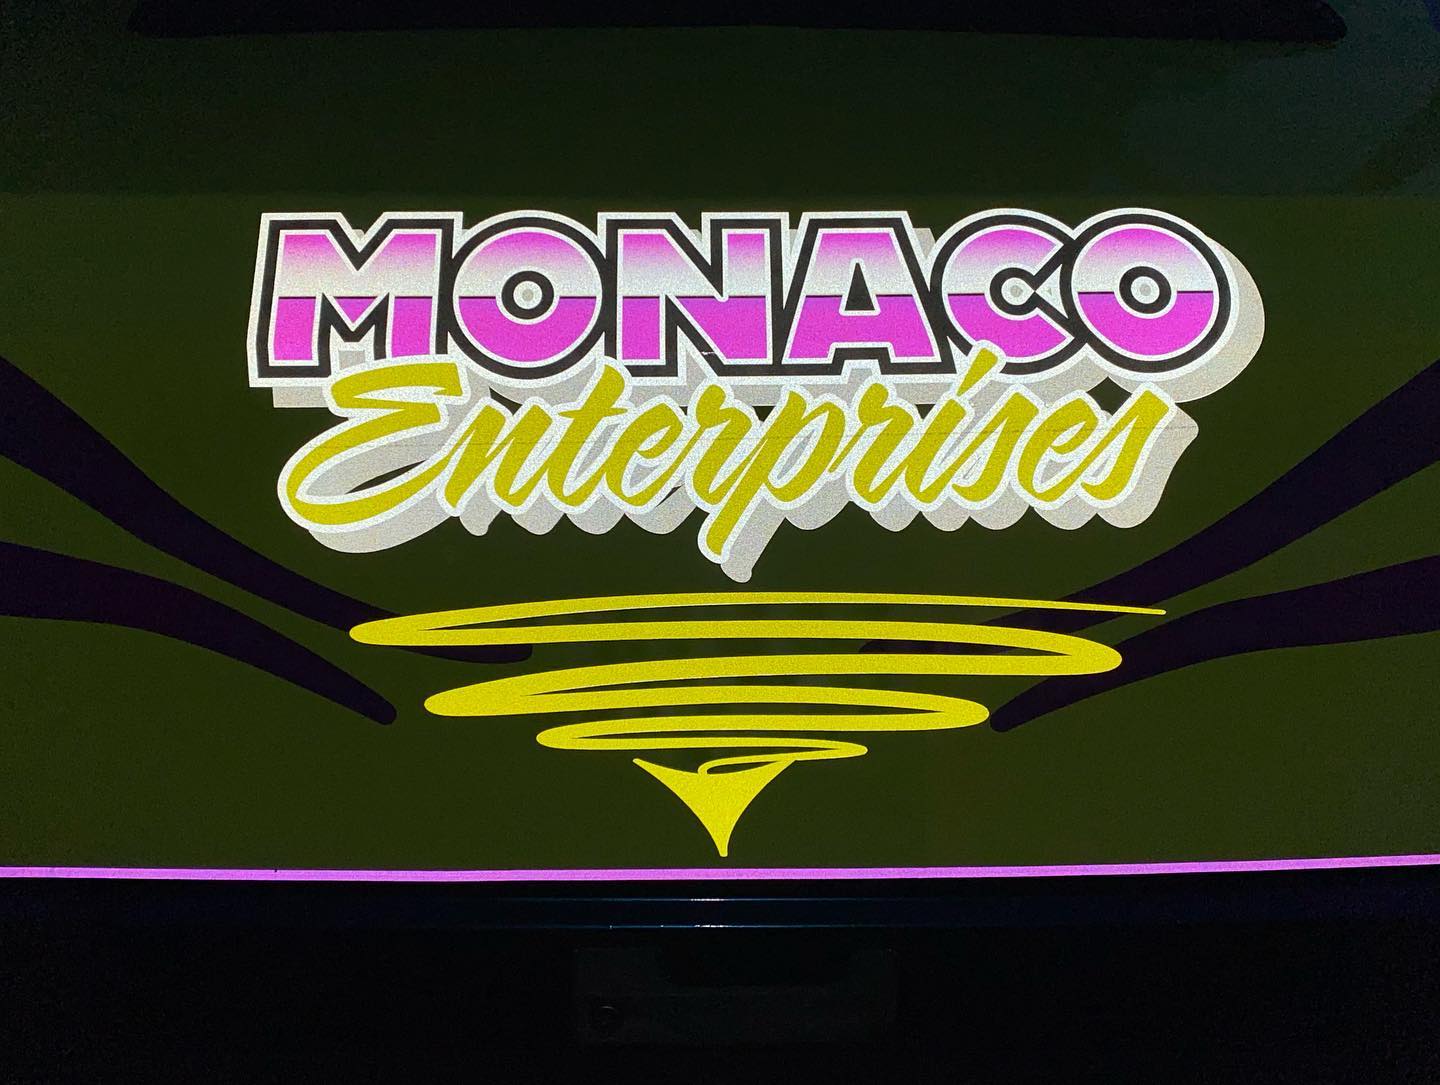 Monaco Enterprises